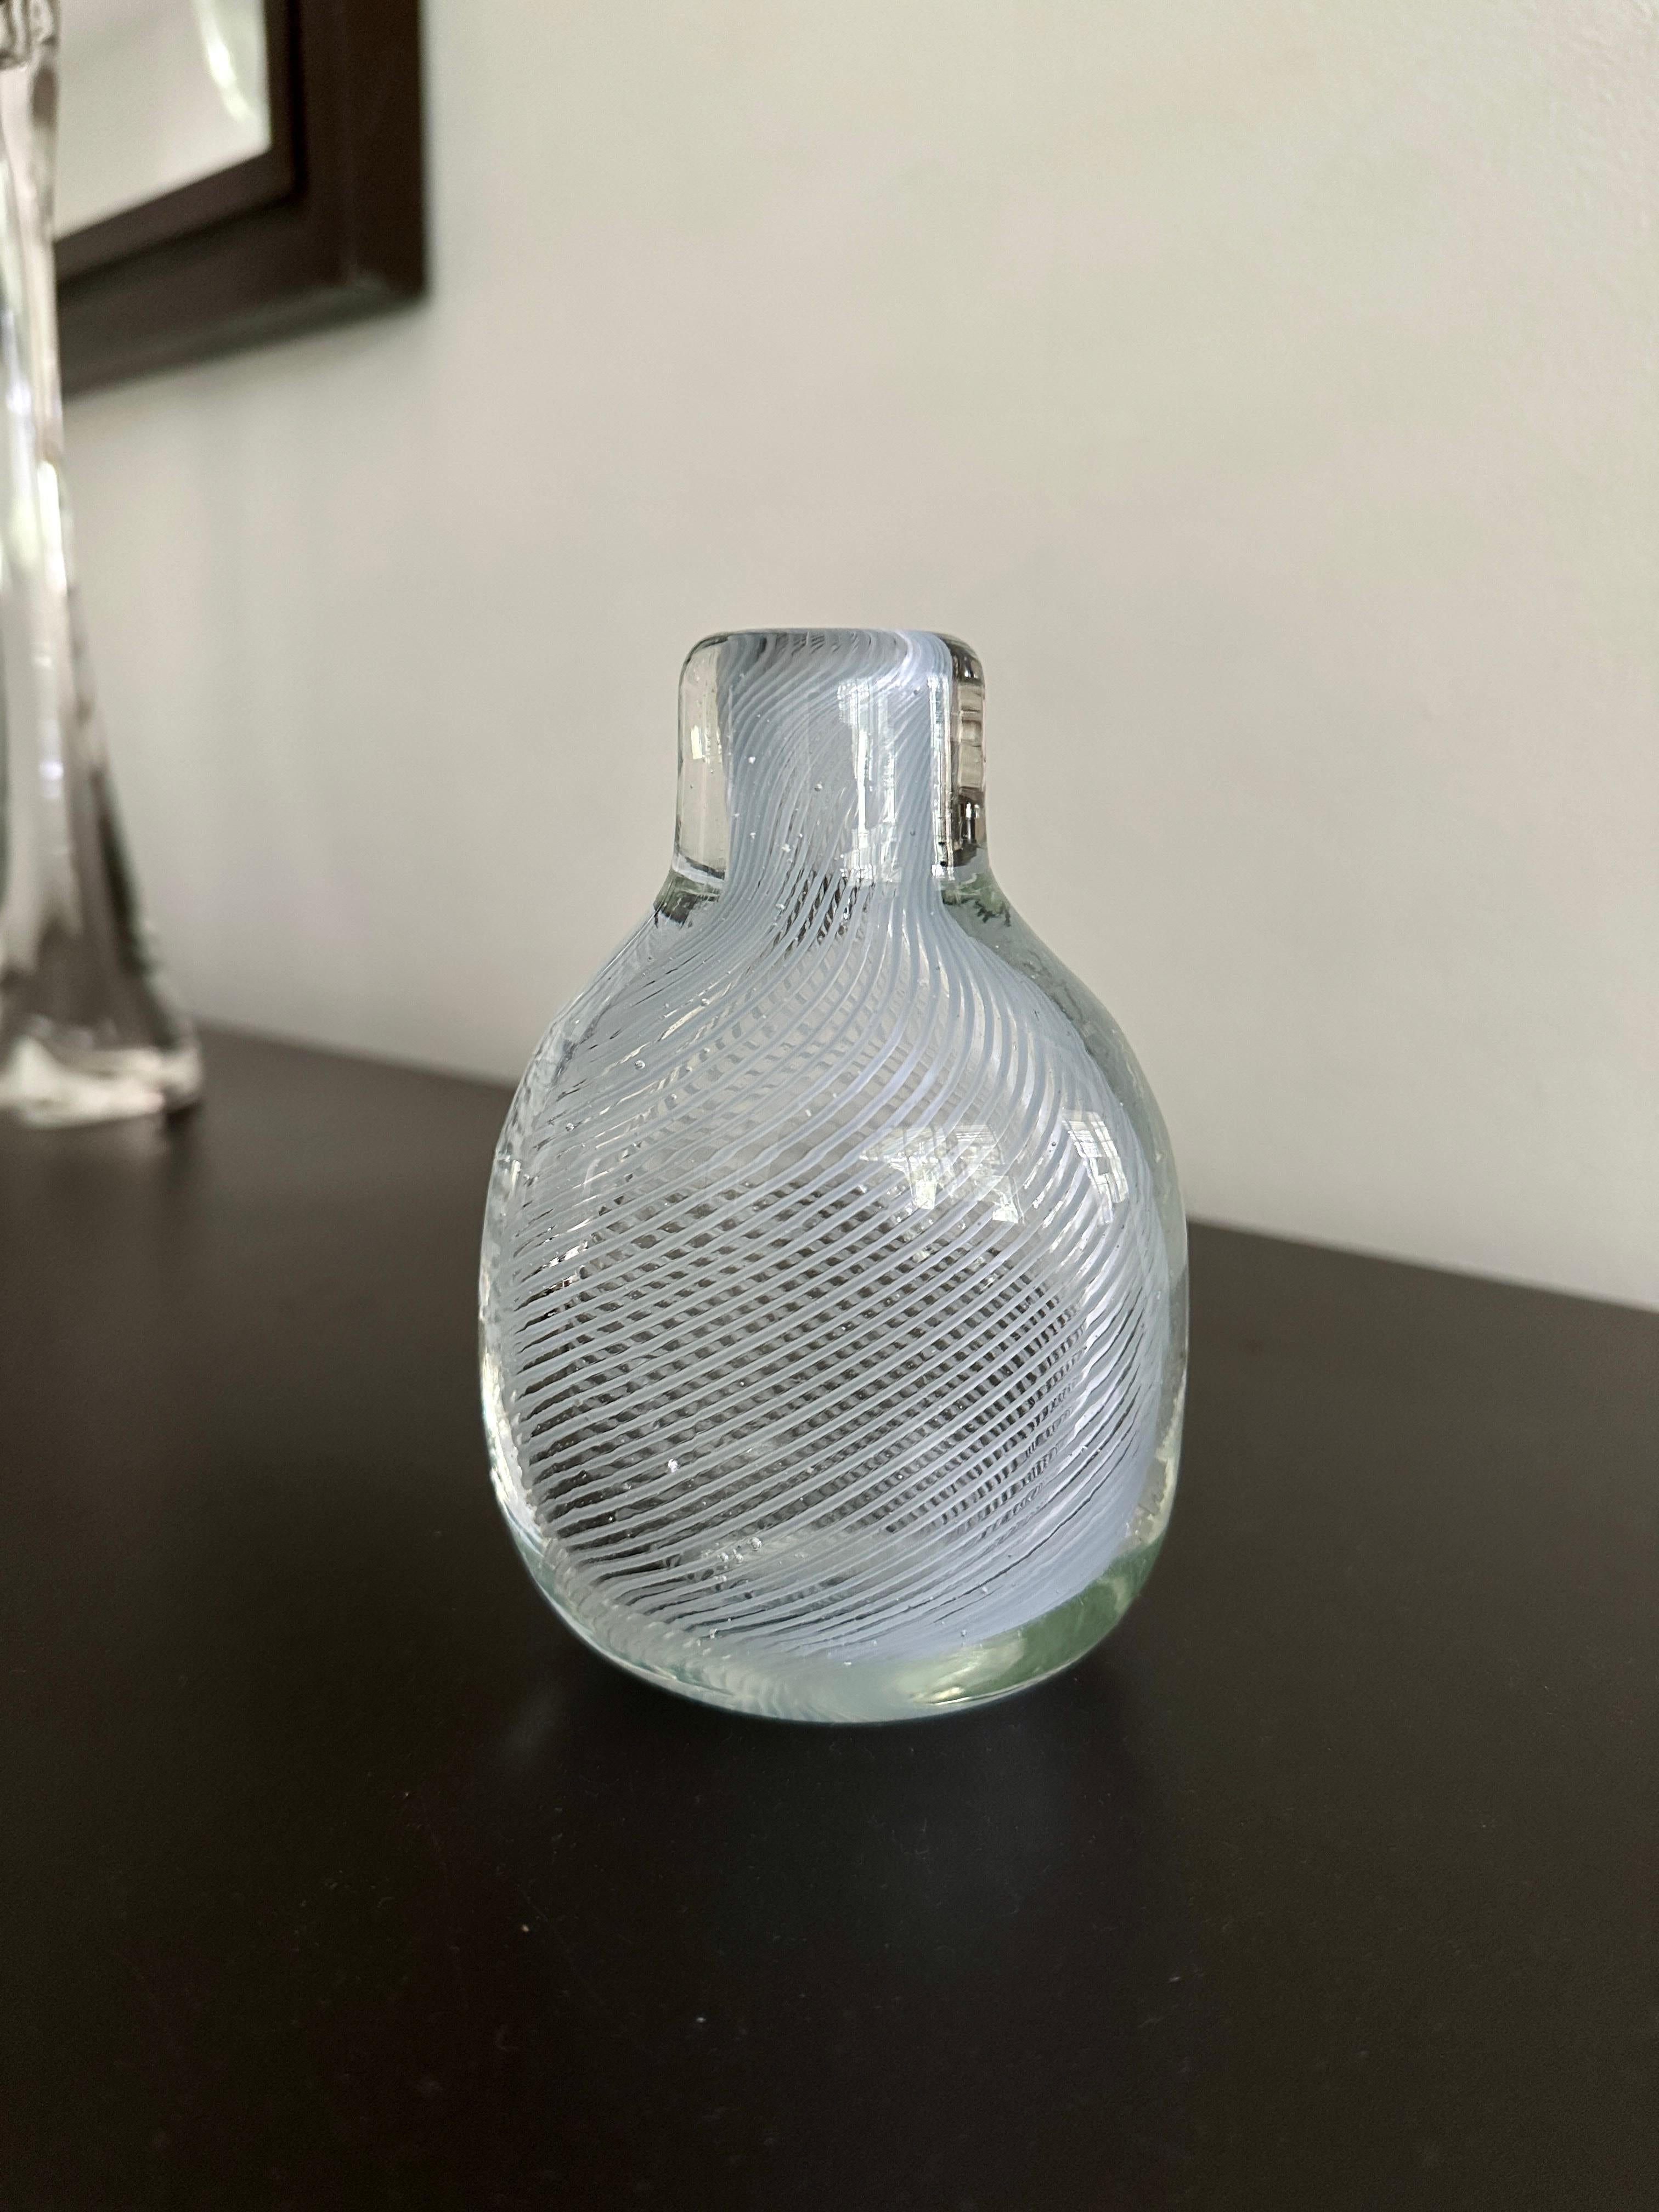 Eine Flasche, die Mitte der 1930er Jahre von Carlo Scarpa für Venini entworfen wurde. Die Flasche hat eine sehr schwache blaugrüne Farbe und zeigt die Mezza Filigrana-Methode des Glasblasens. Ein kleiner Schatz, der nicht oft auftaucht. Die Flasche